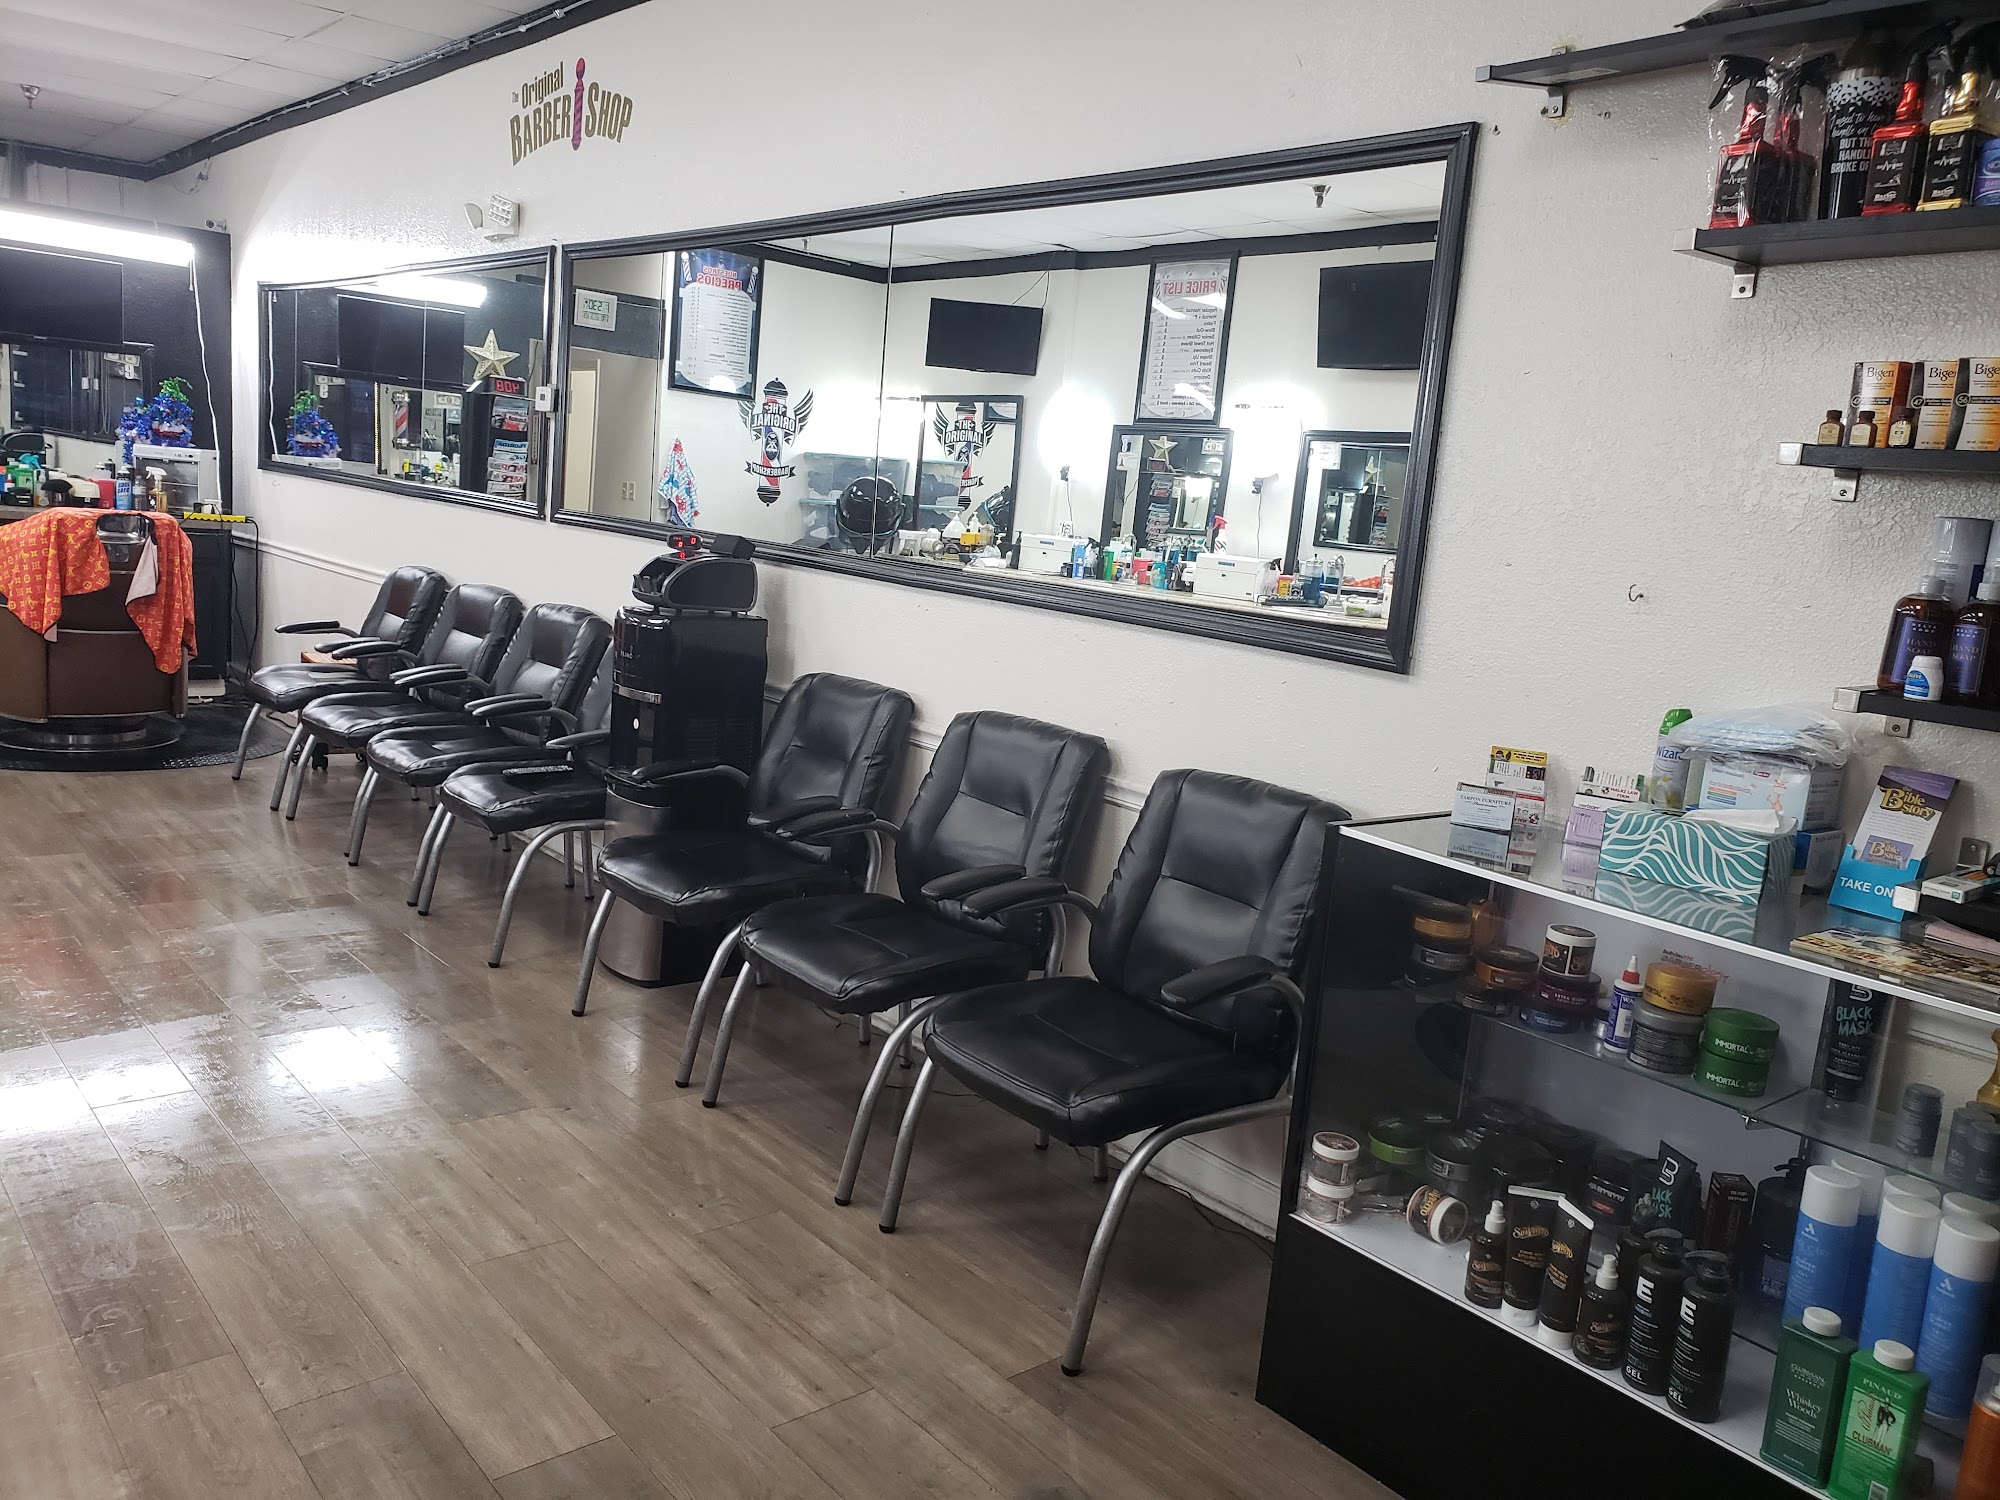 The Original BarberShop